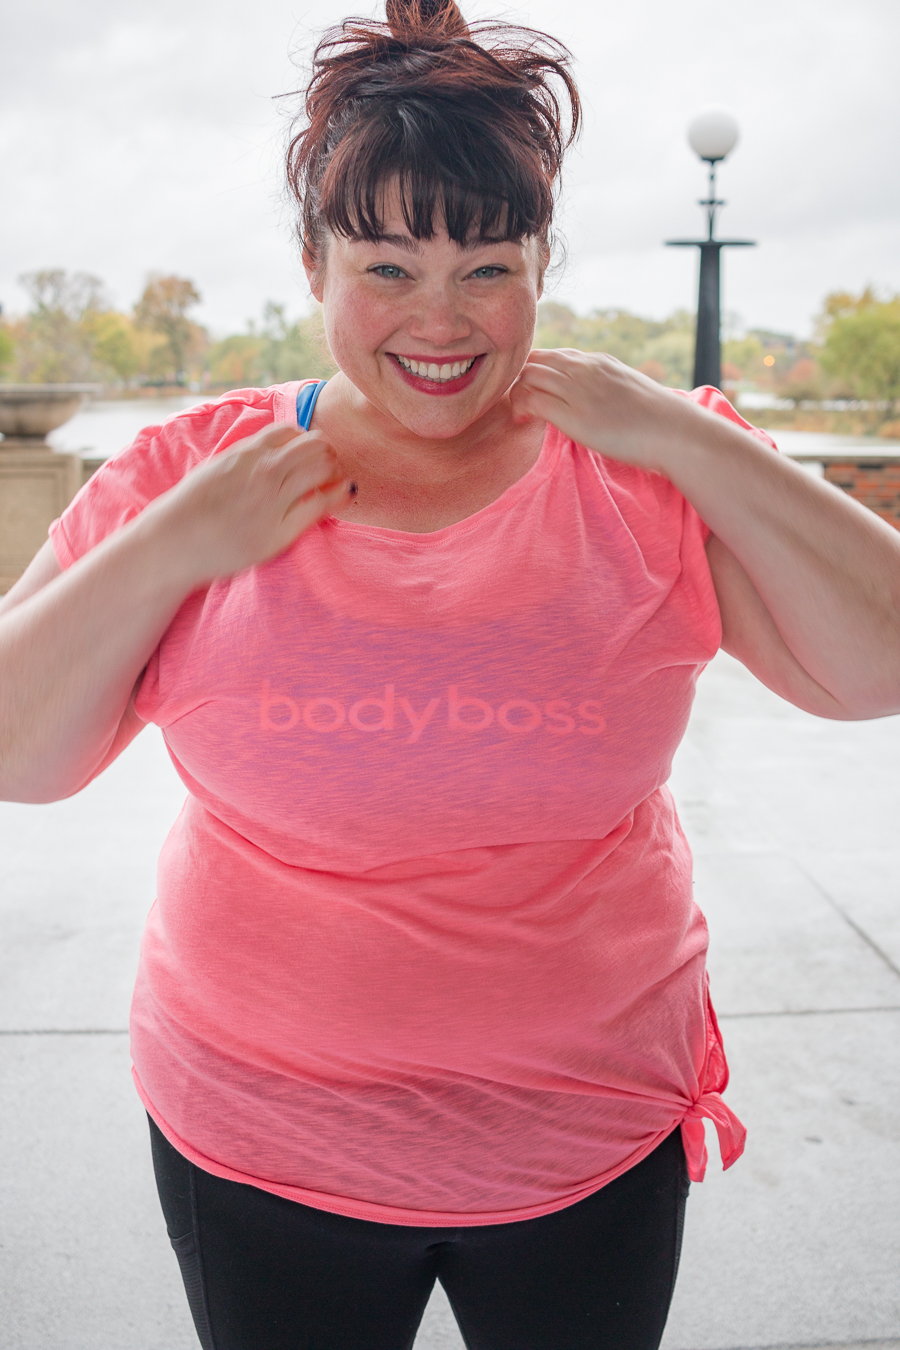 BodyBoss, BodyBoss Method, Fat but Fit, BodyBoss Review, Plus Size Style, Plus Size Fashion, Style Plus Curves, Chicago Blogger, Chicago Plus Size Blogger, Plus Size Blogger, Amber McCulloch